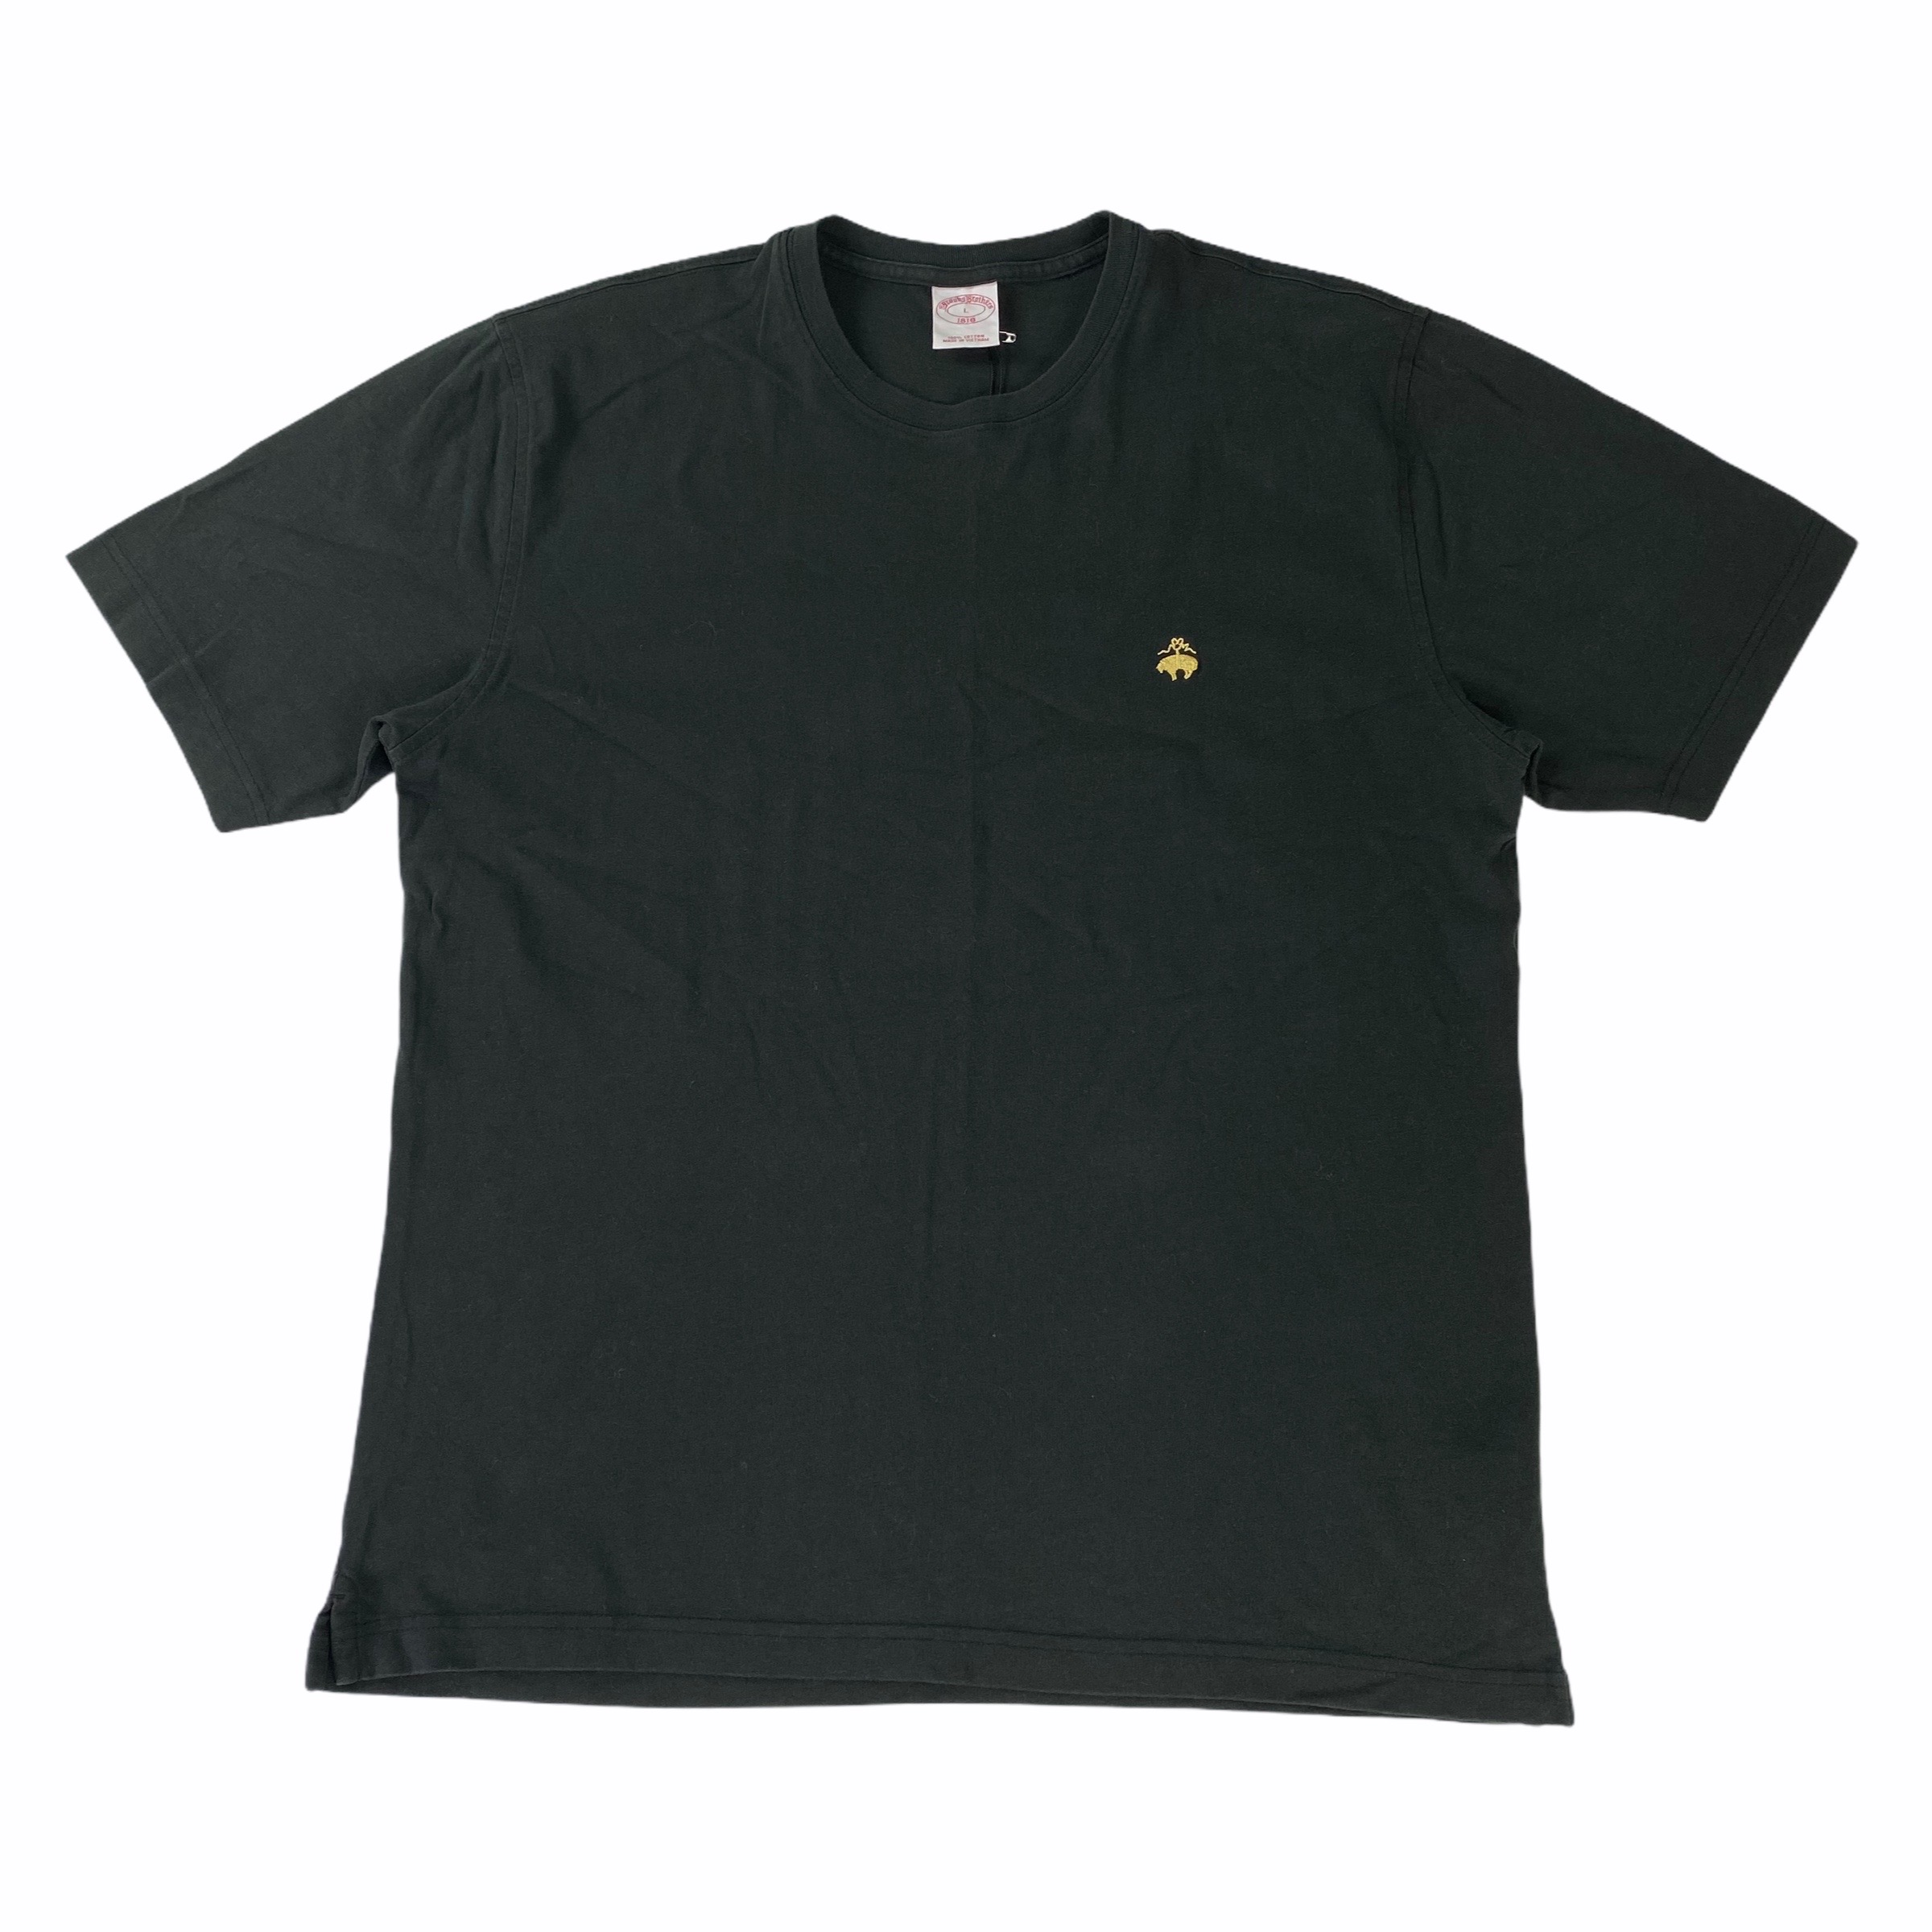 [Brooks Brothers] Black Tshirt - Size L